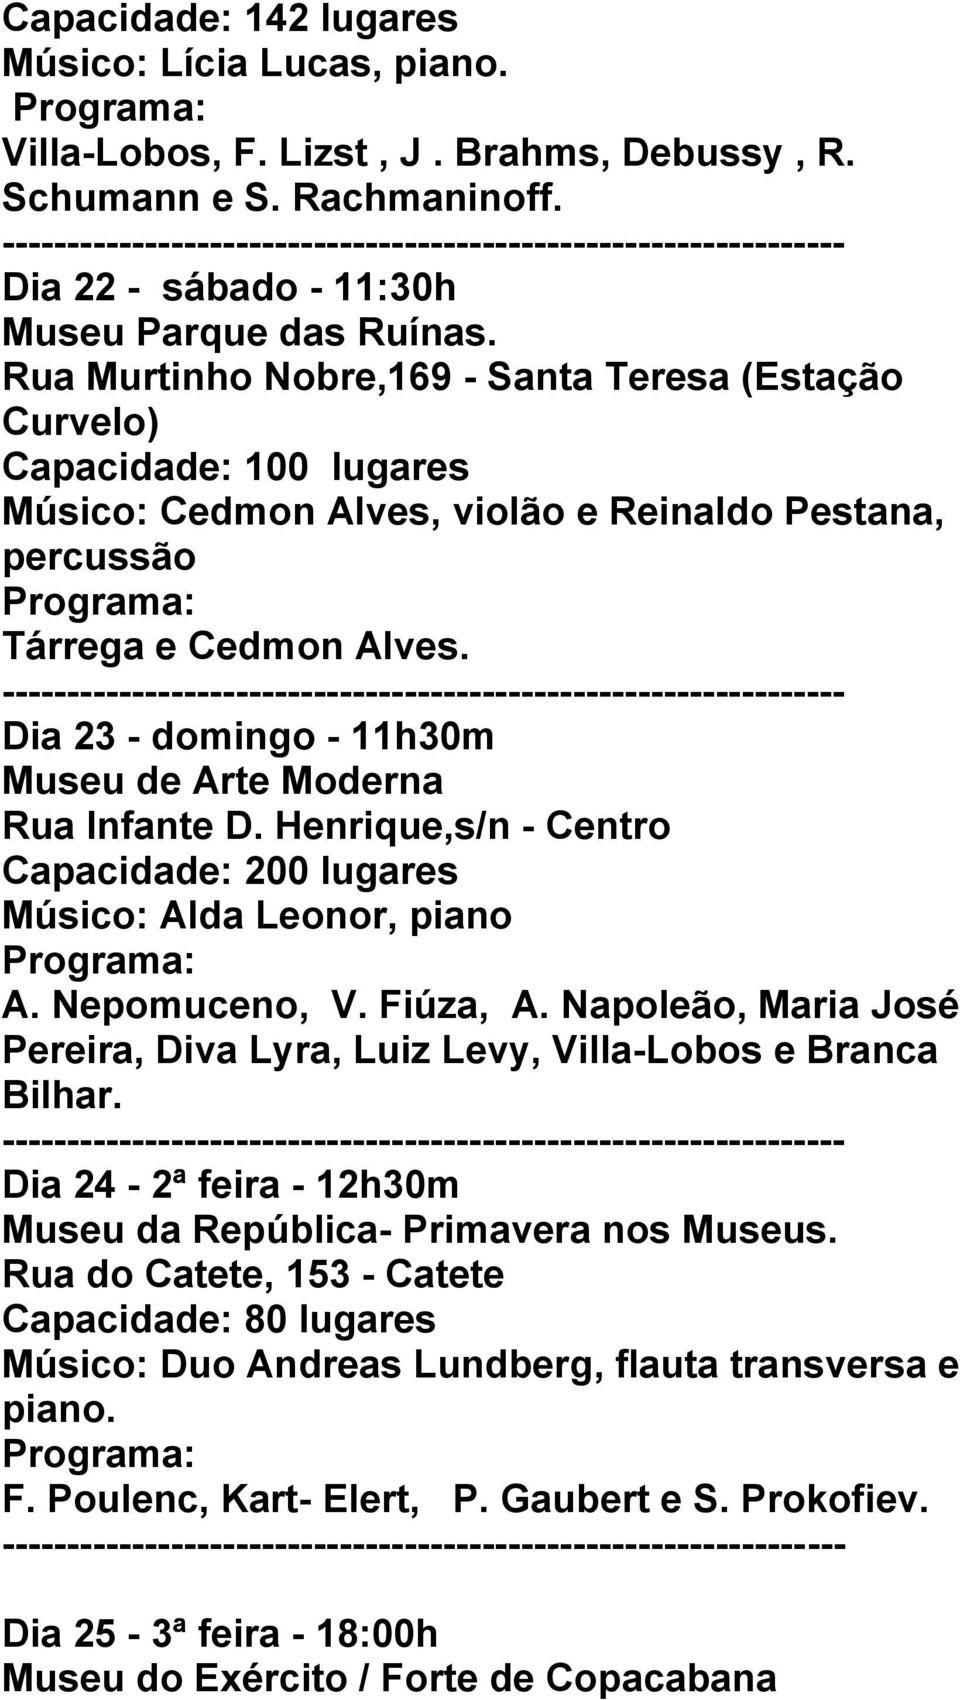 Dia 23 - domingo - 11h30m Museu de Arte Moderna Rua Infante D. Henrique,s/n - Centro Músico: Alda Leonor, piano A. Nepomuceno, V. Fiúza, A.